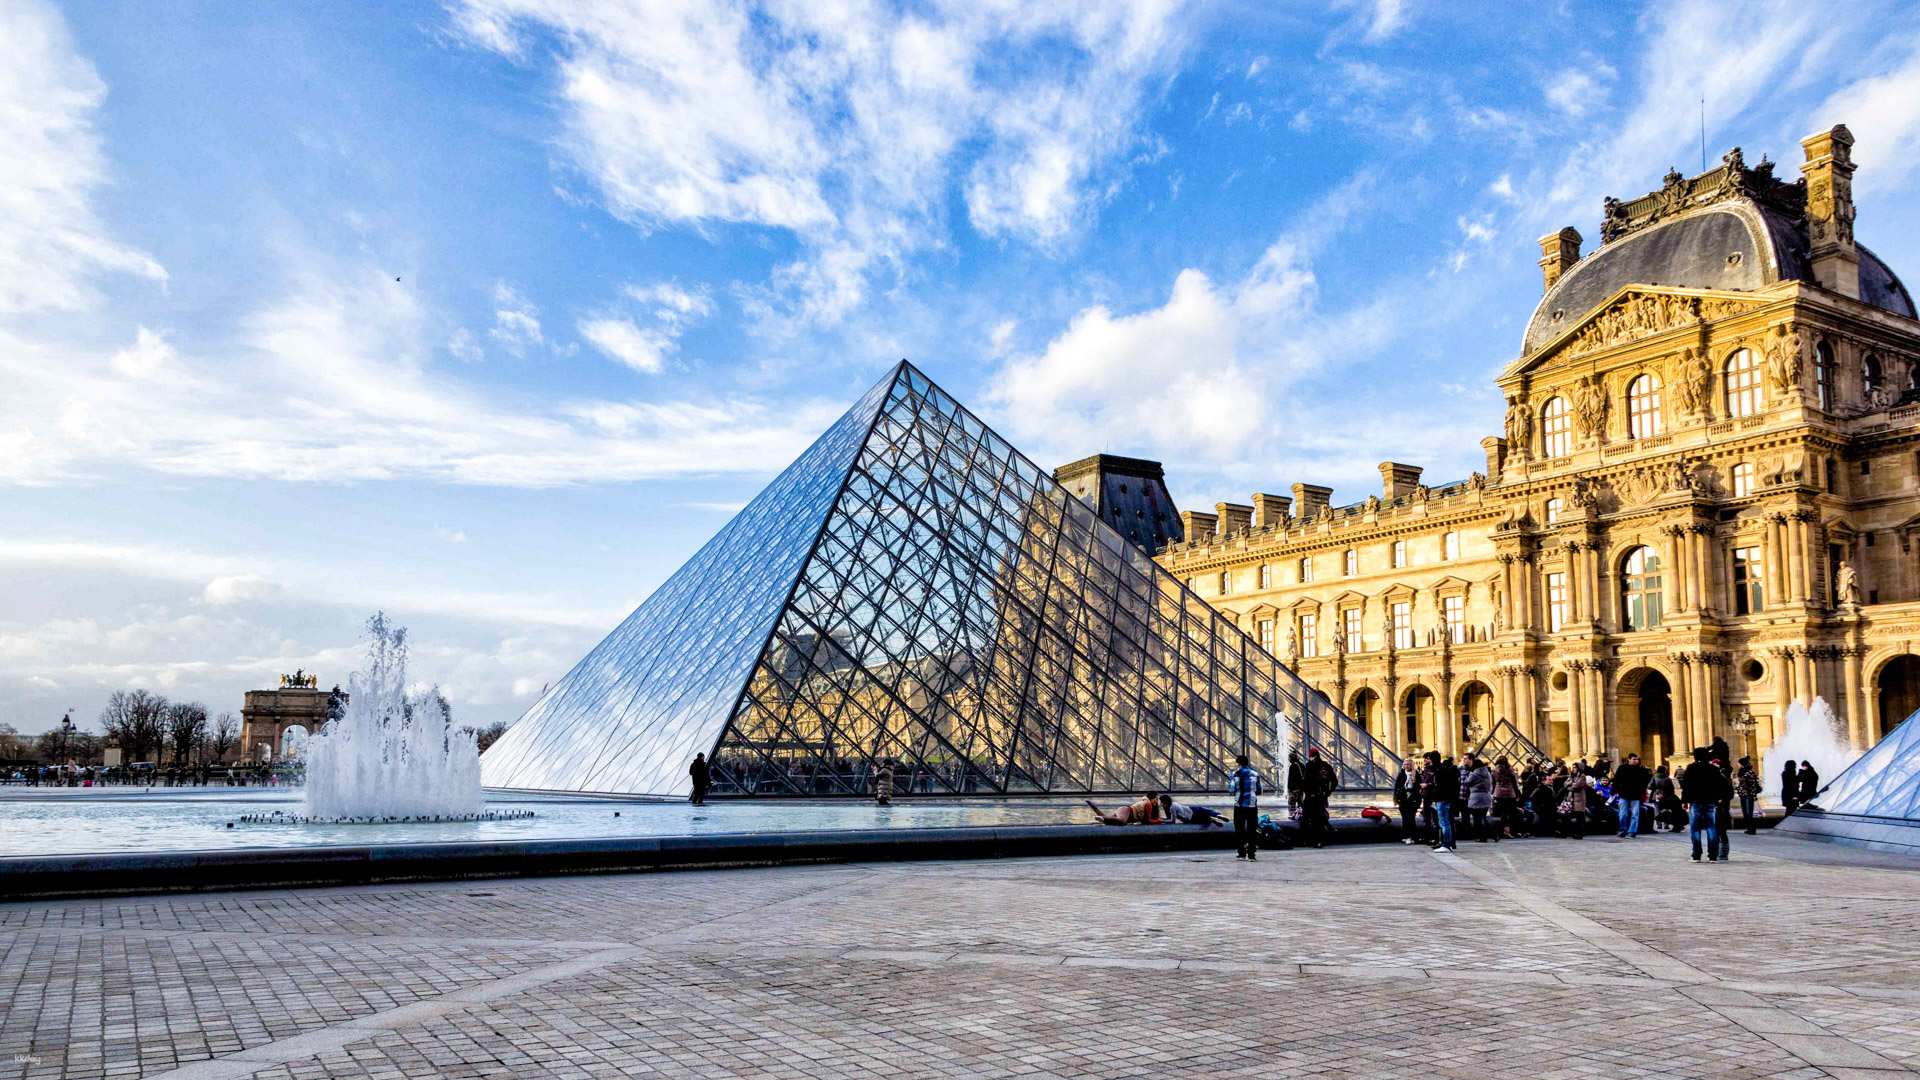 法國-巴黎羅浮宮博物館門票 Louvre Museum| 自助導覽,導遊導覽